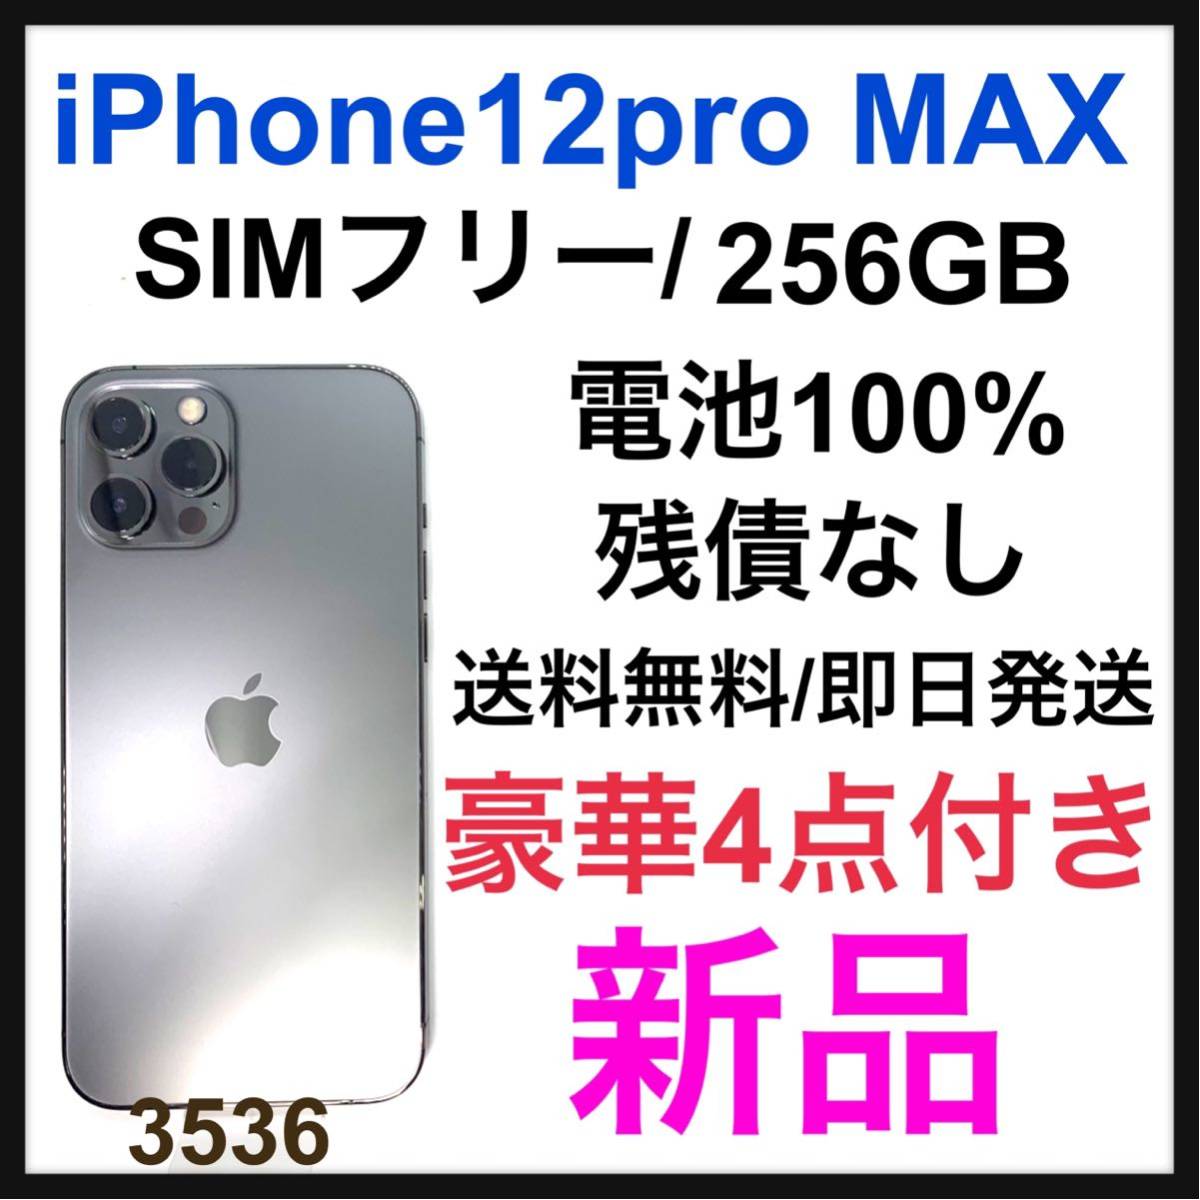 iPhone 12 pro グラファイト GB 256 SIMフリー